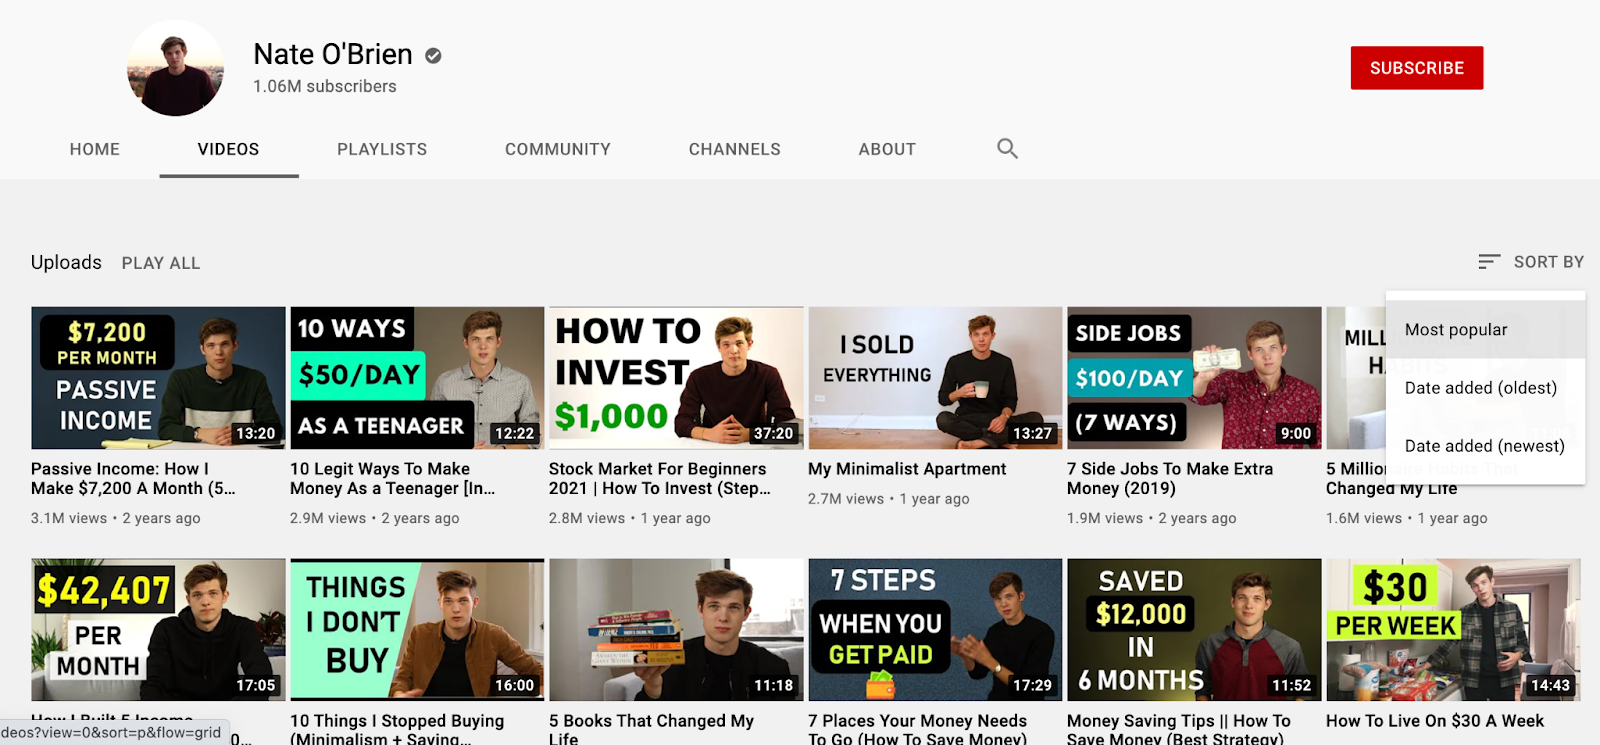 youtube for brands case study slideshare